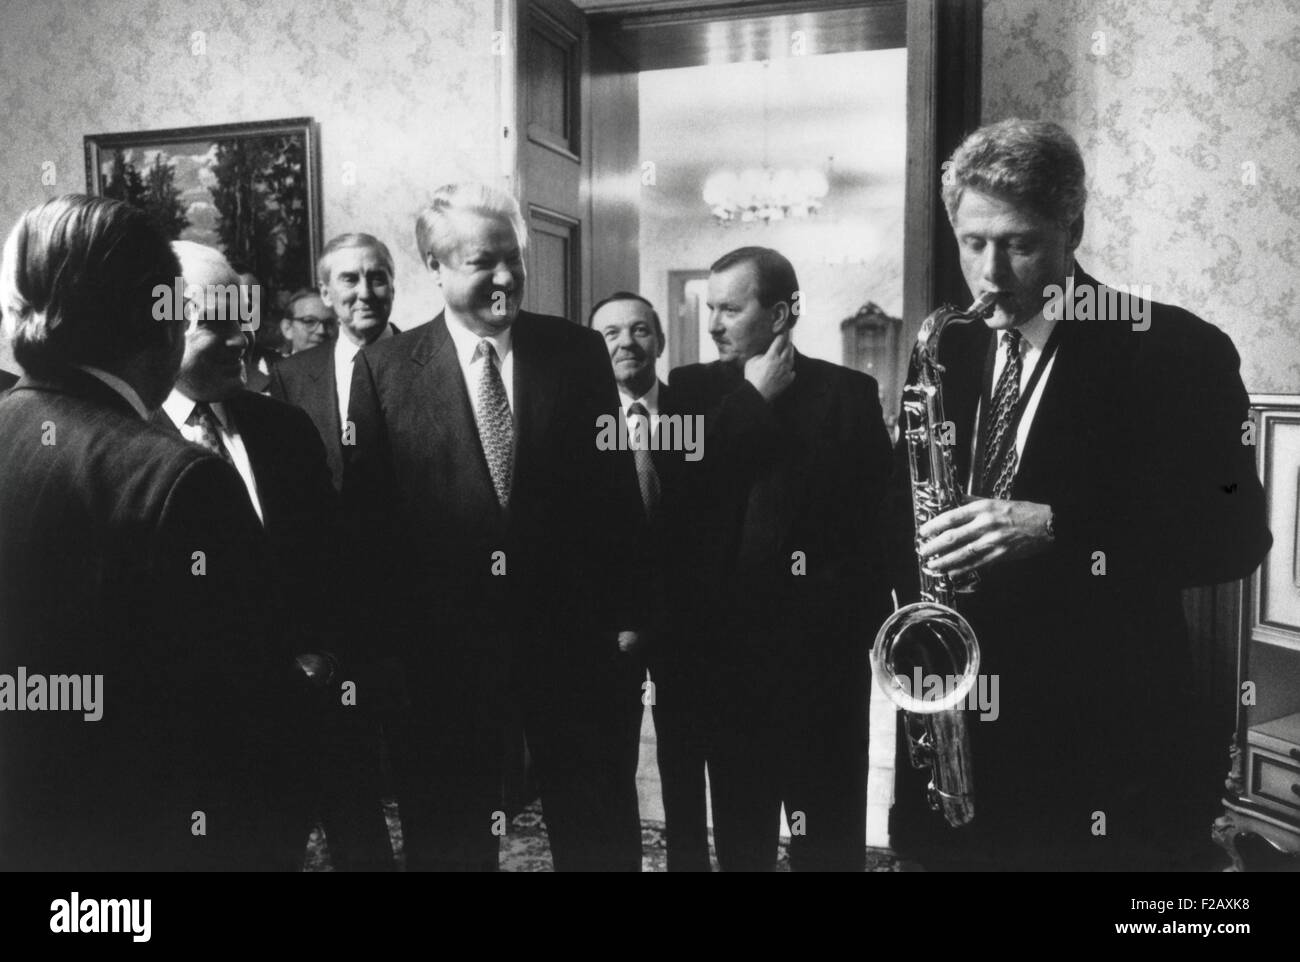 Le président Bill Clinton joue du saxophone qui lui a été présenté par le président russe Boris Eltsine. Eltsine a organisé un dîner privé Banque D'Images